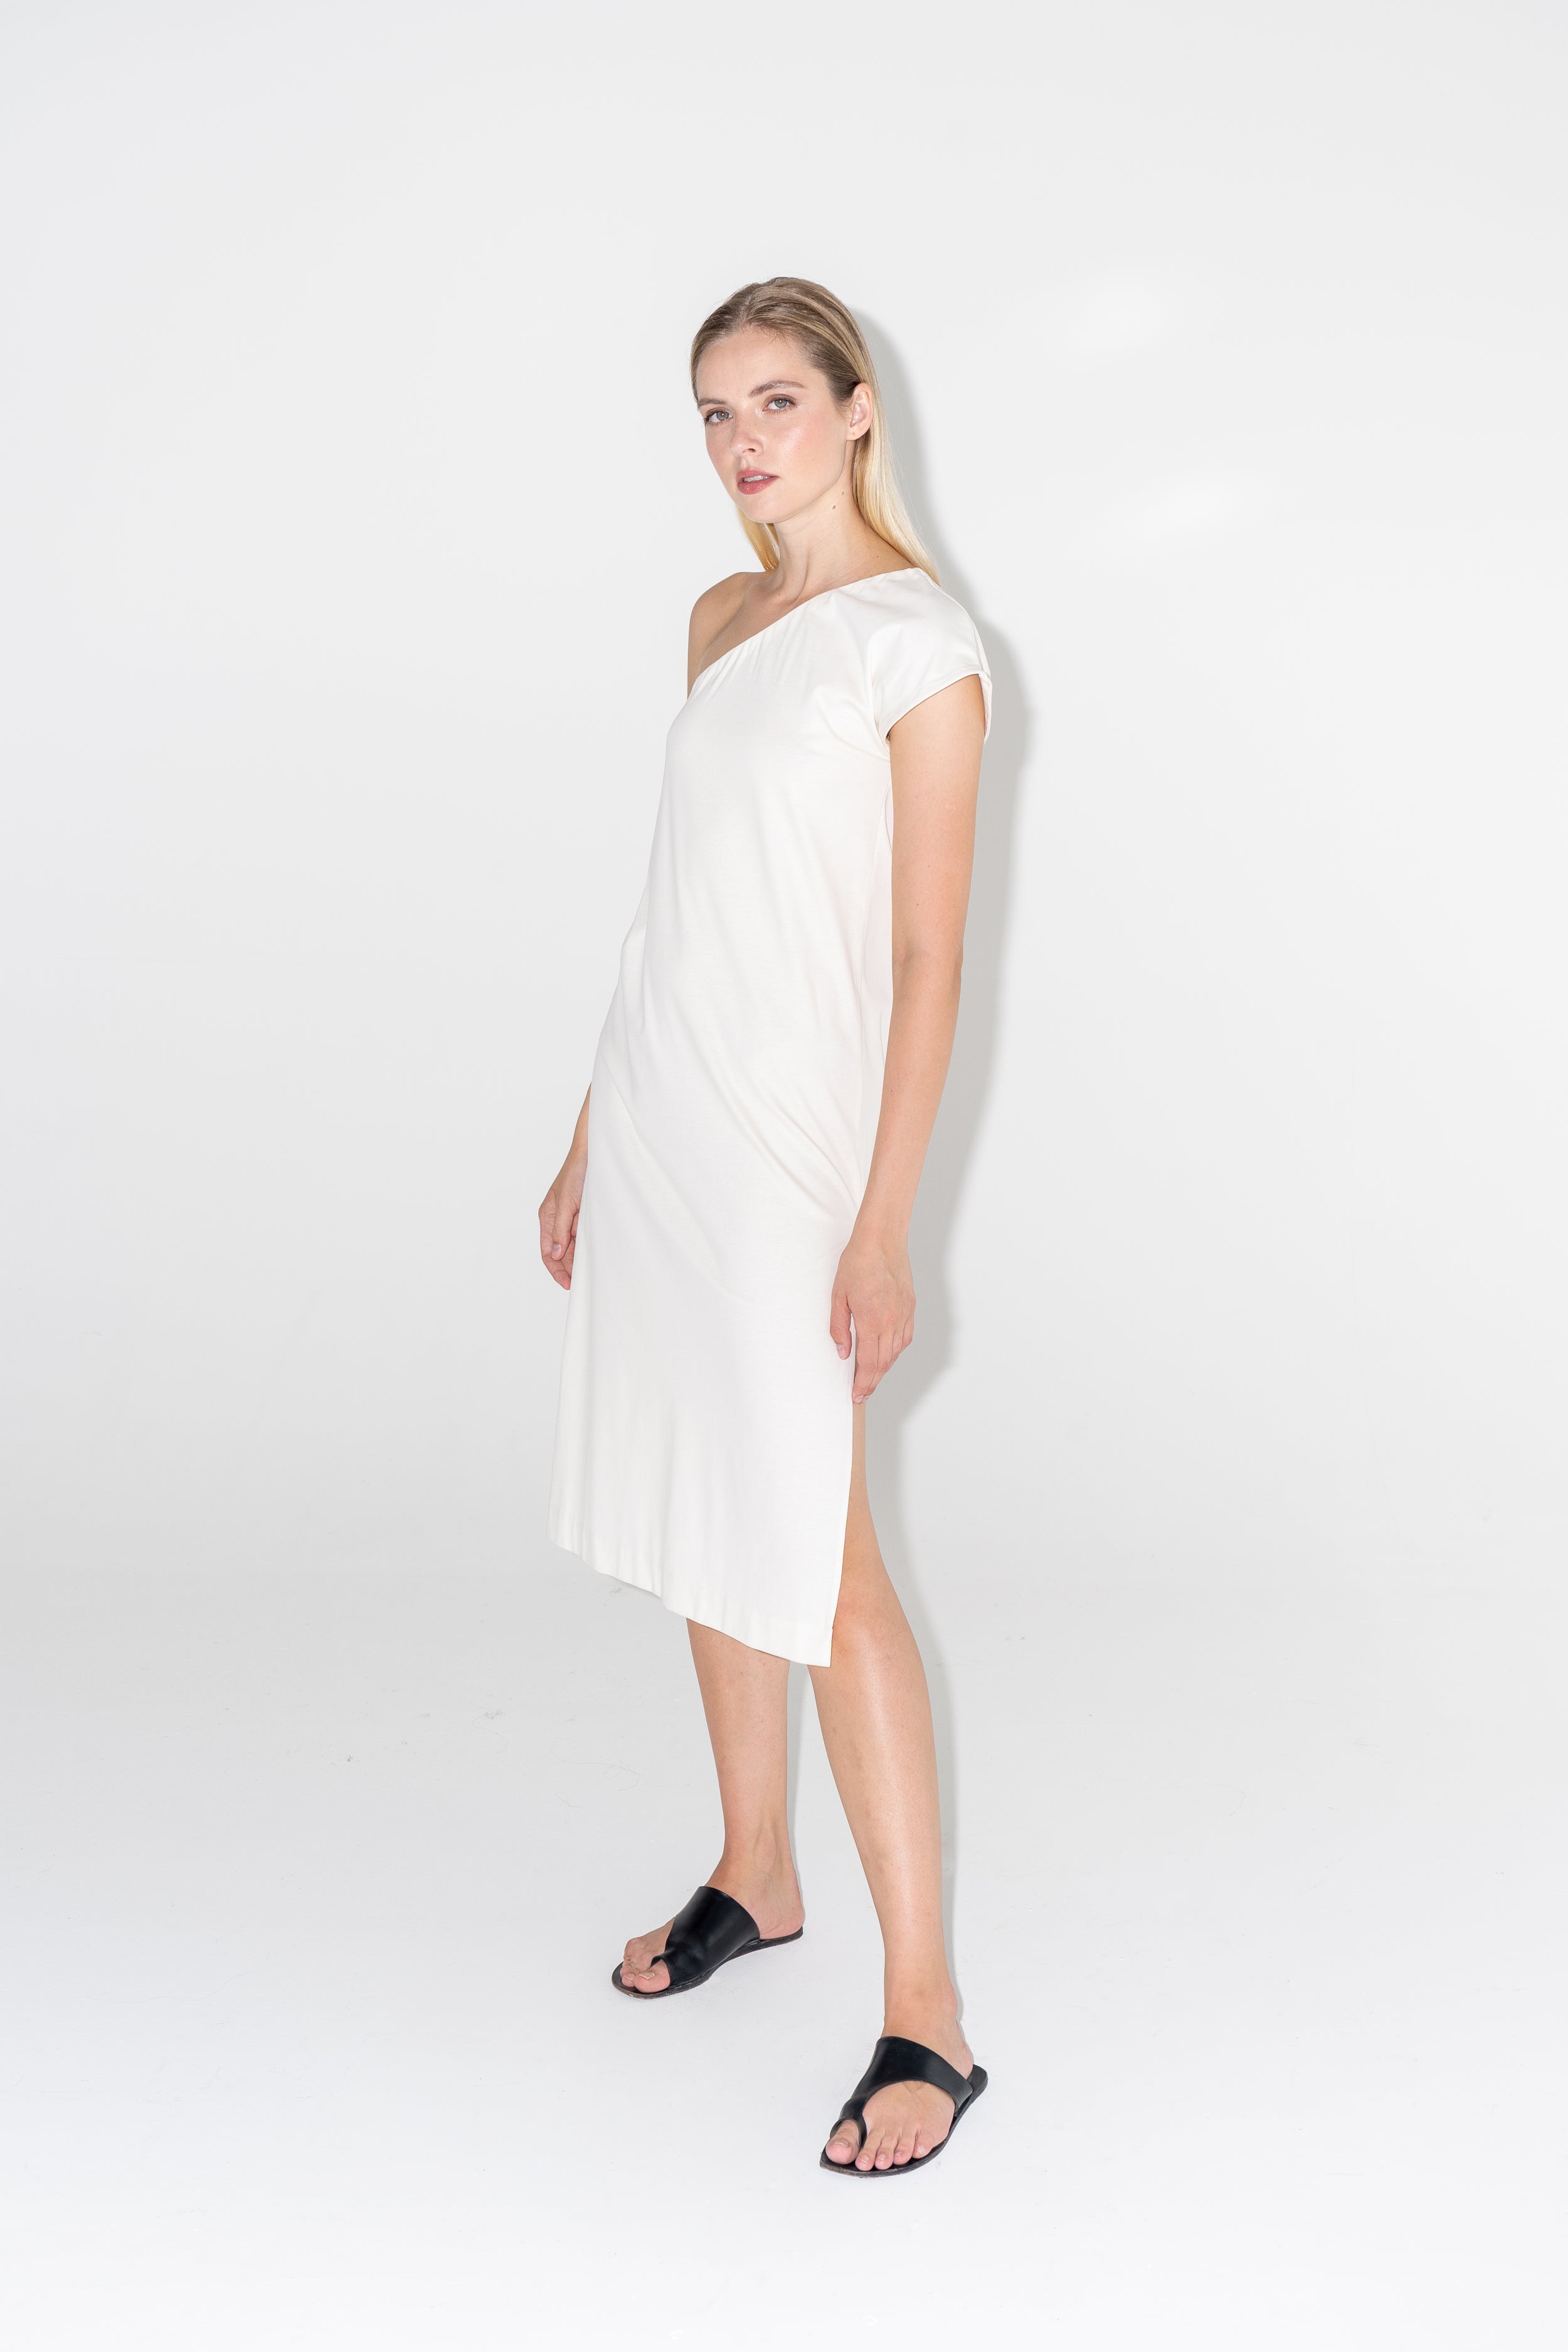 bíle midi šaty s rozparkem na jedno rameno ADVA Studios s černými pantoflemi